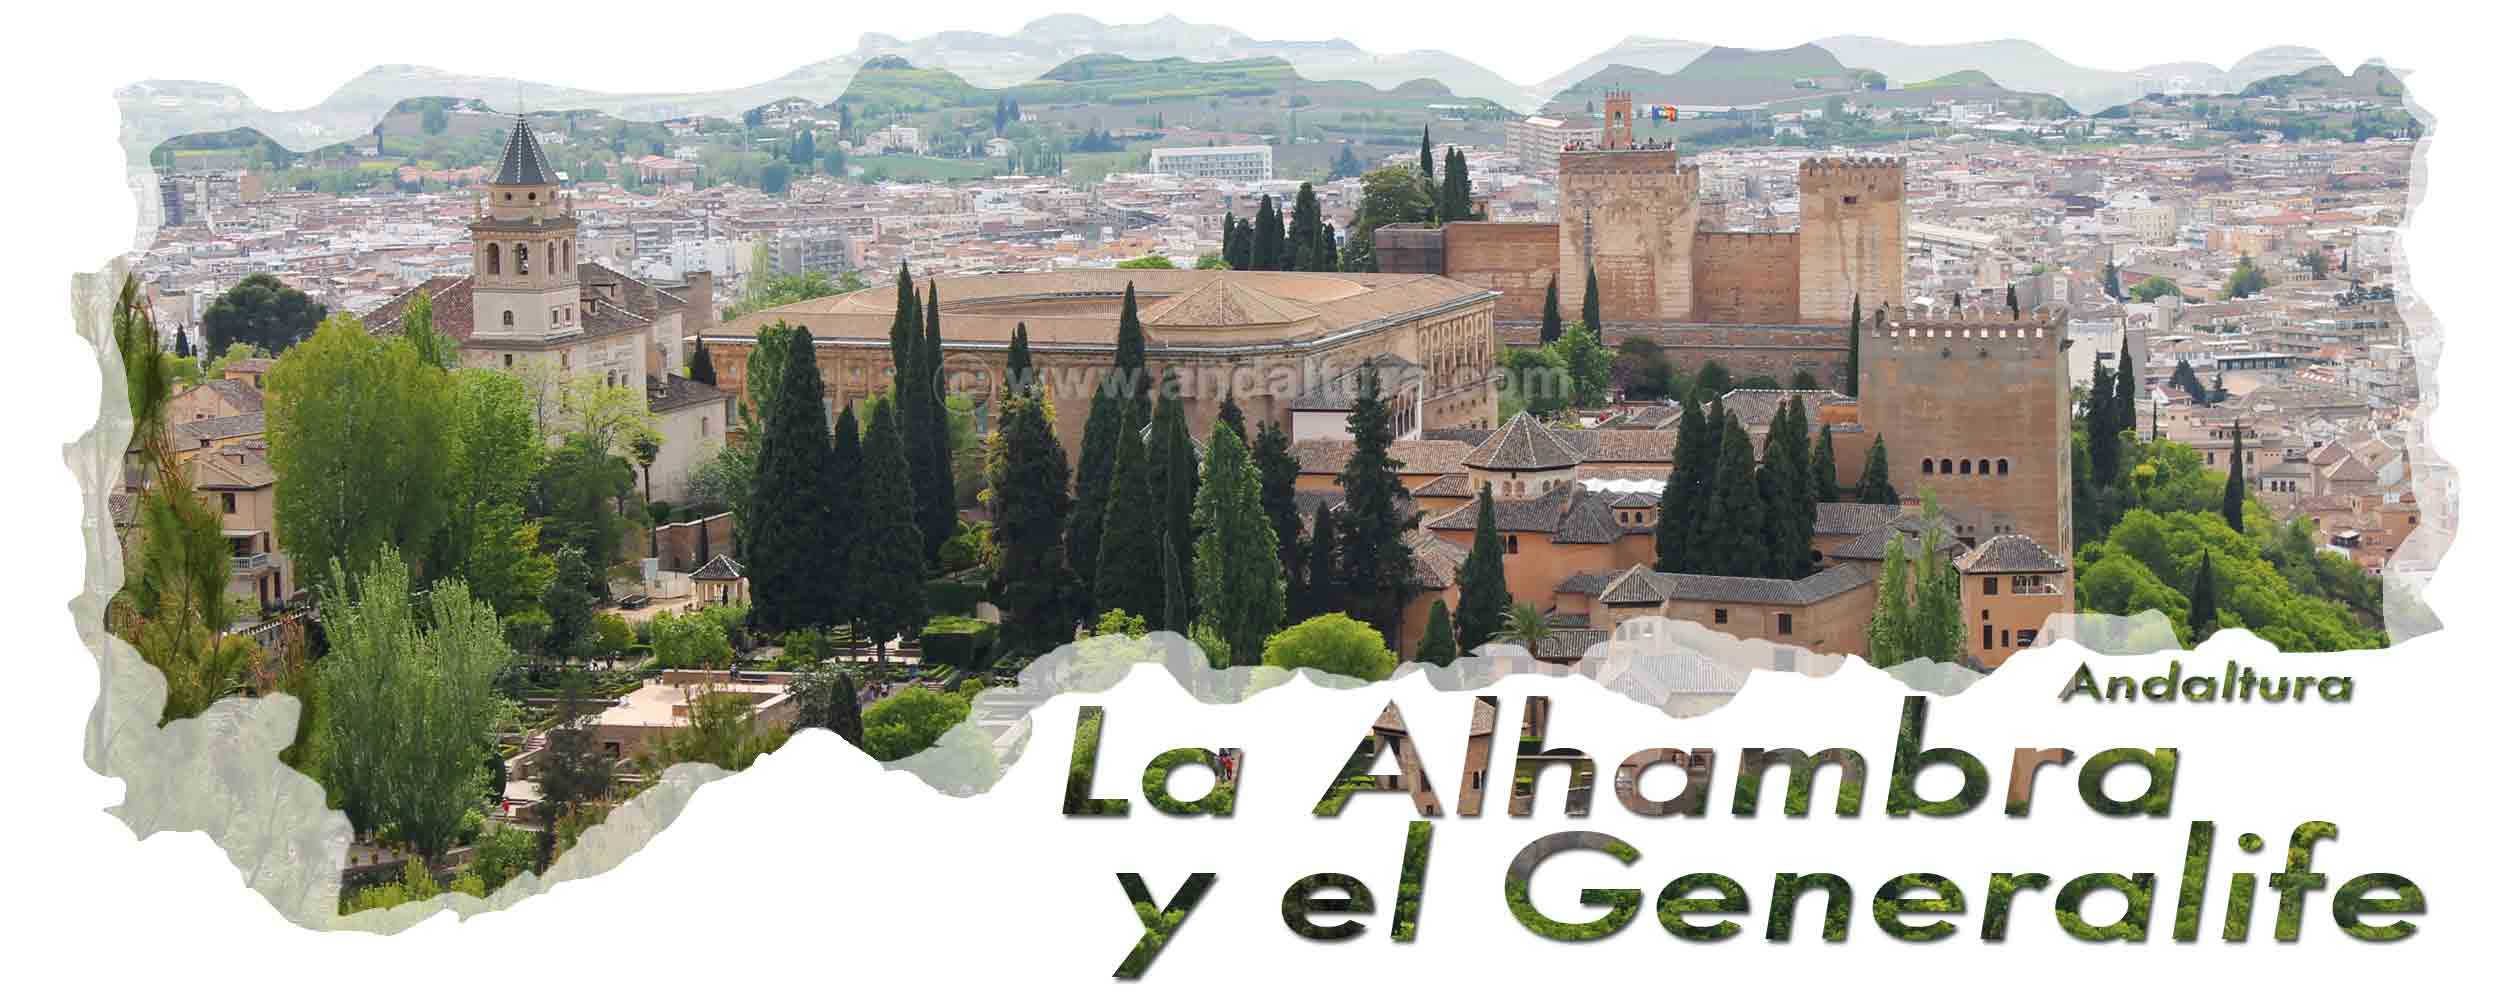 La Alhambra desde la Silla del Moro - Cabecera Plano y Guía de la Alhambra y el Generalife